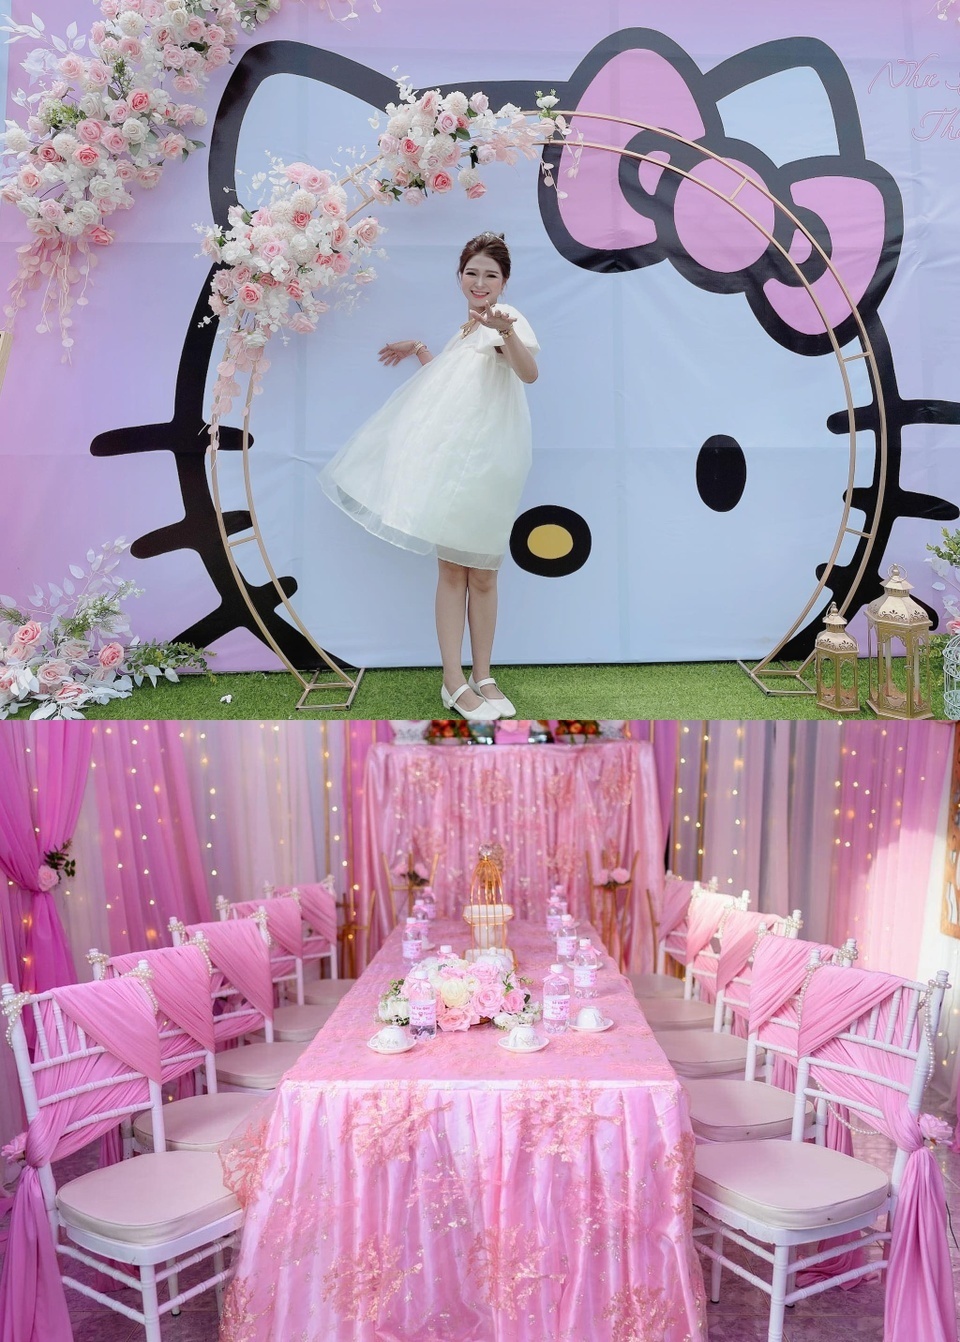  
Cô dâu ở Long Xuyên cũng trang trí đám cưới theo phong cách Hello Kitty. (Ảnh: Zing News)